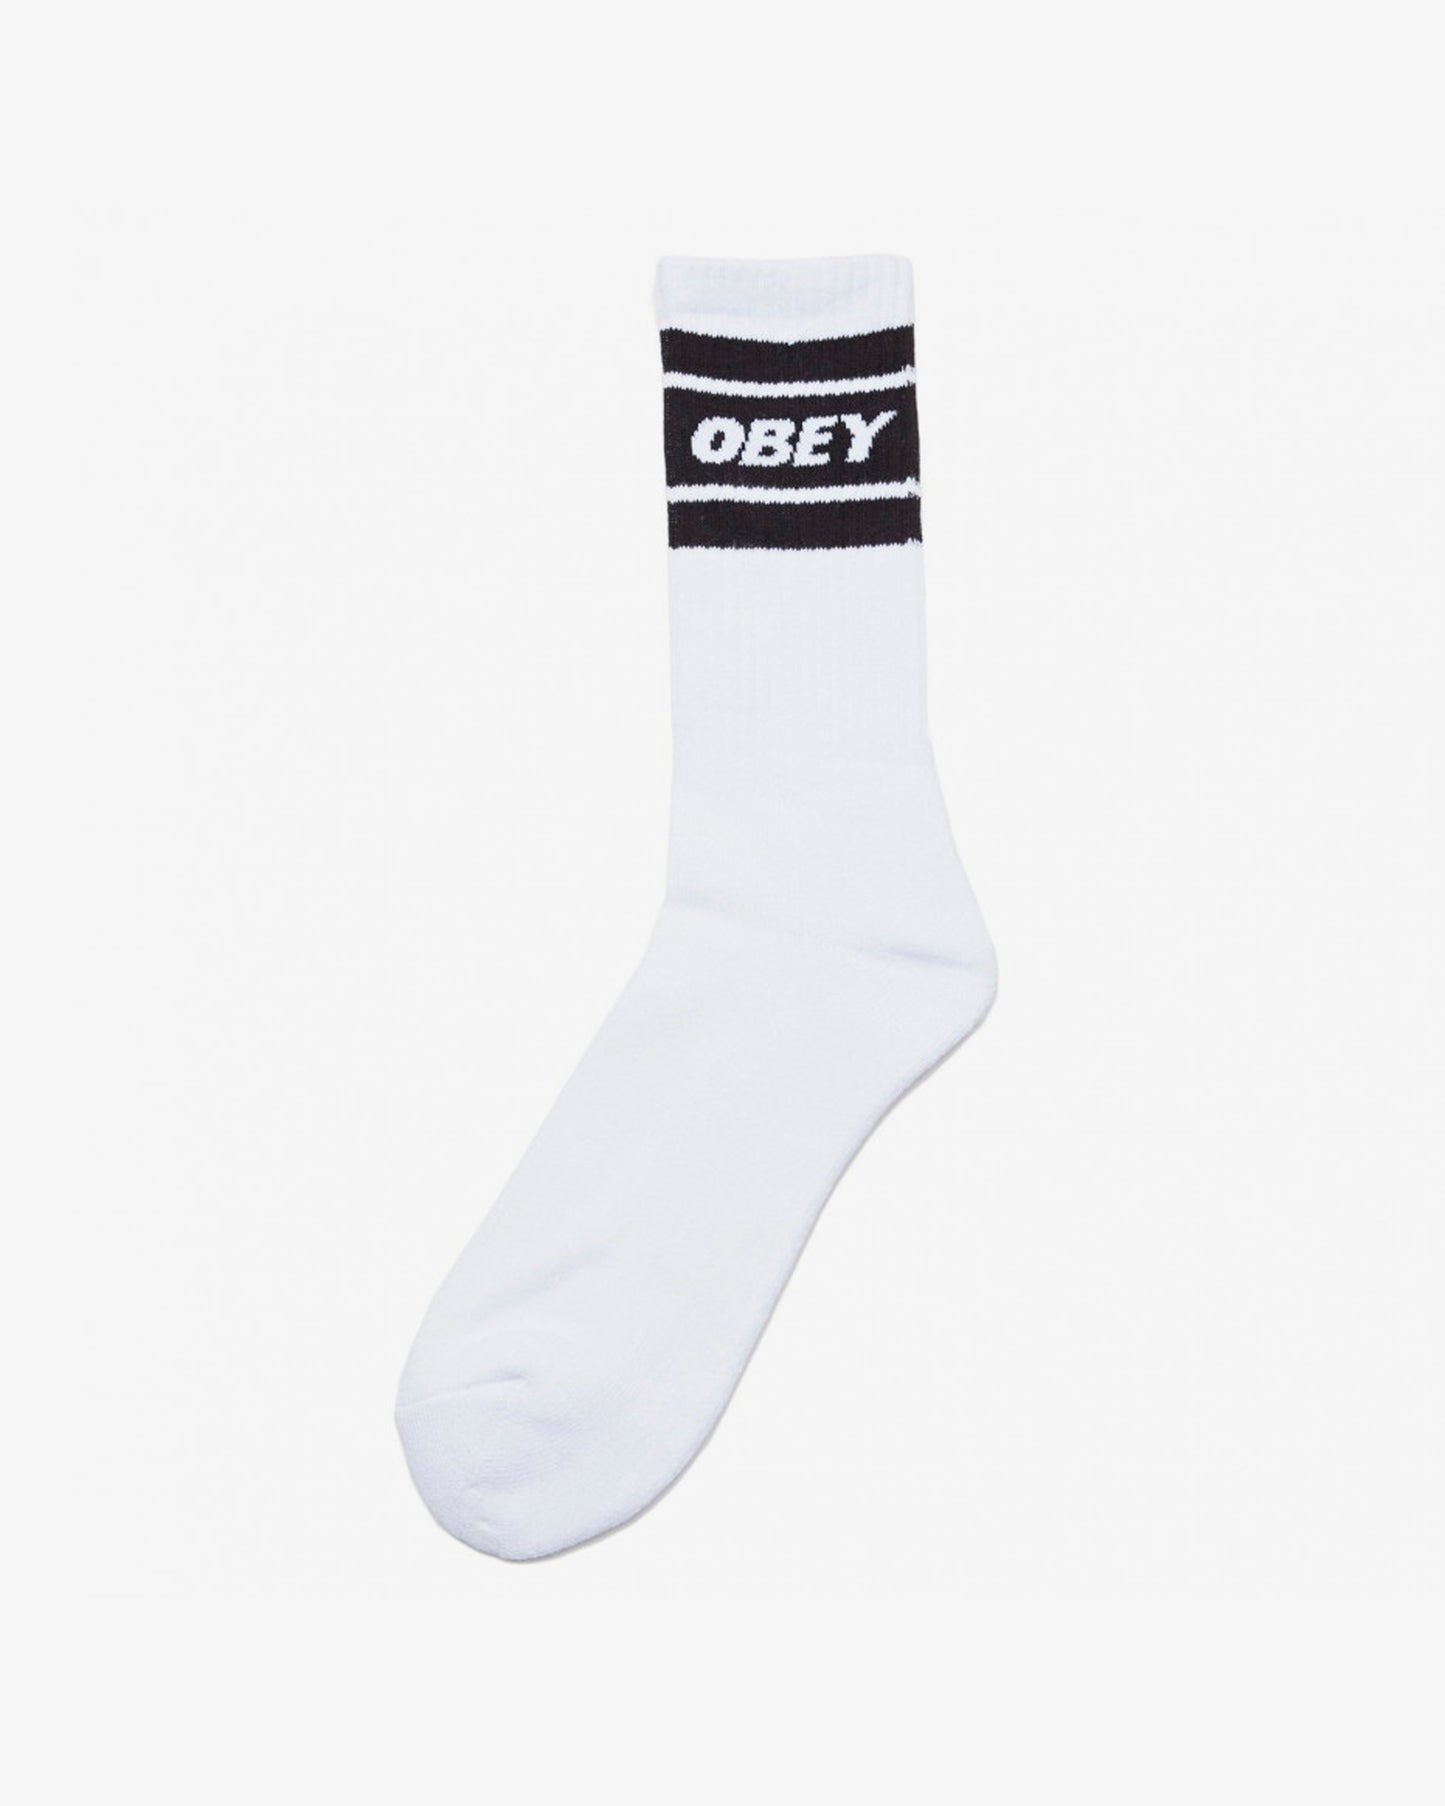 Obey Cooper II Socks